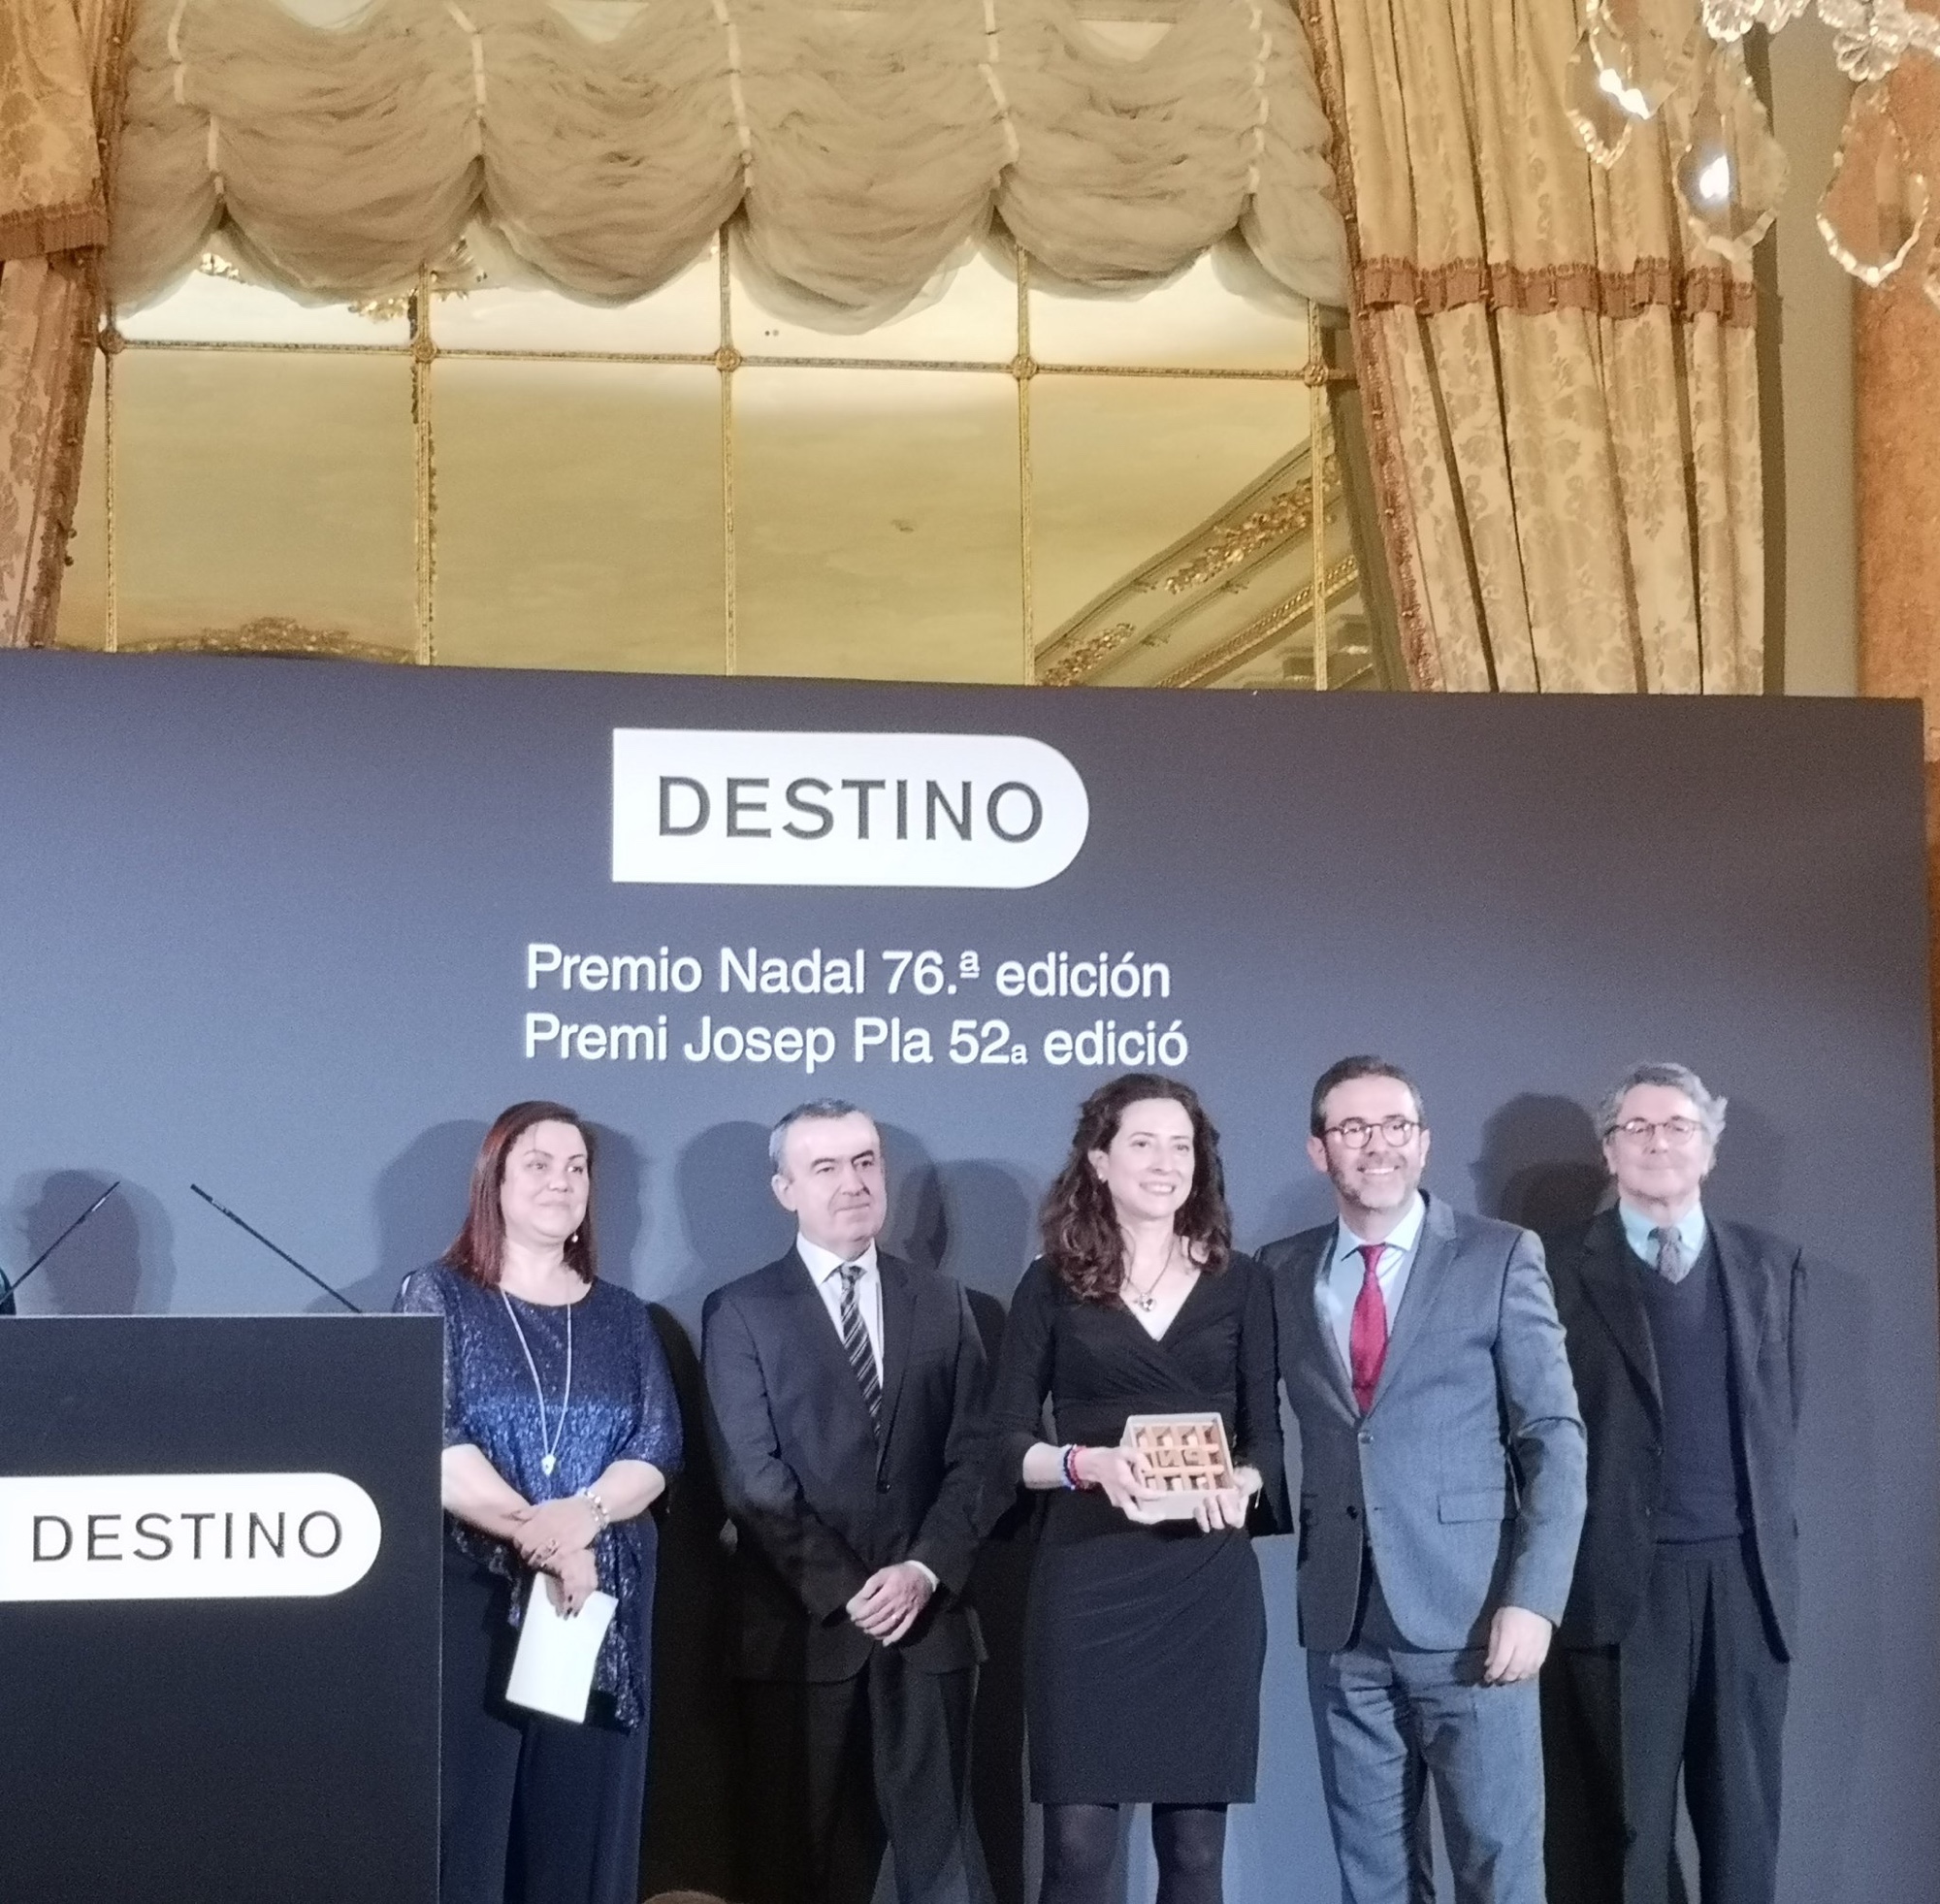 #PremioNadal Gracias @EdDestino por permitirme ser testigo directo de la entrega de los premios Nadal y Josep Pla